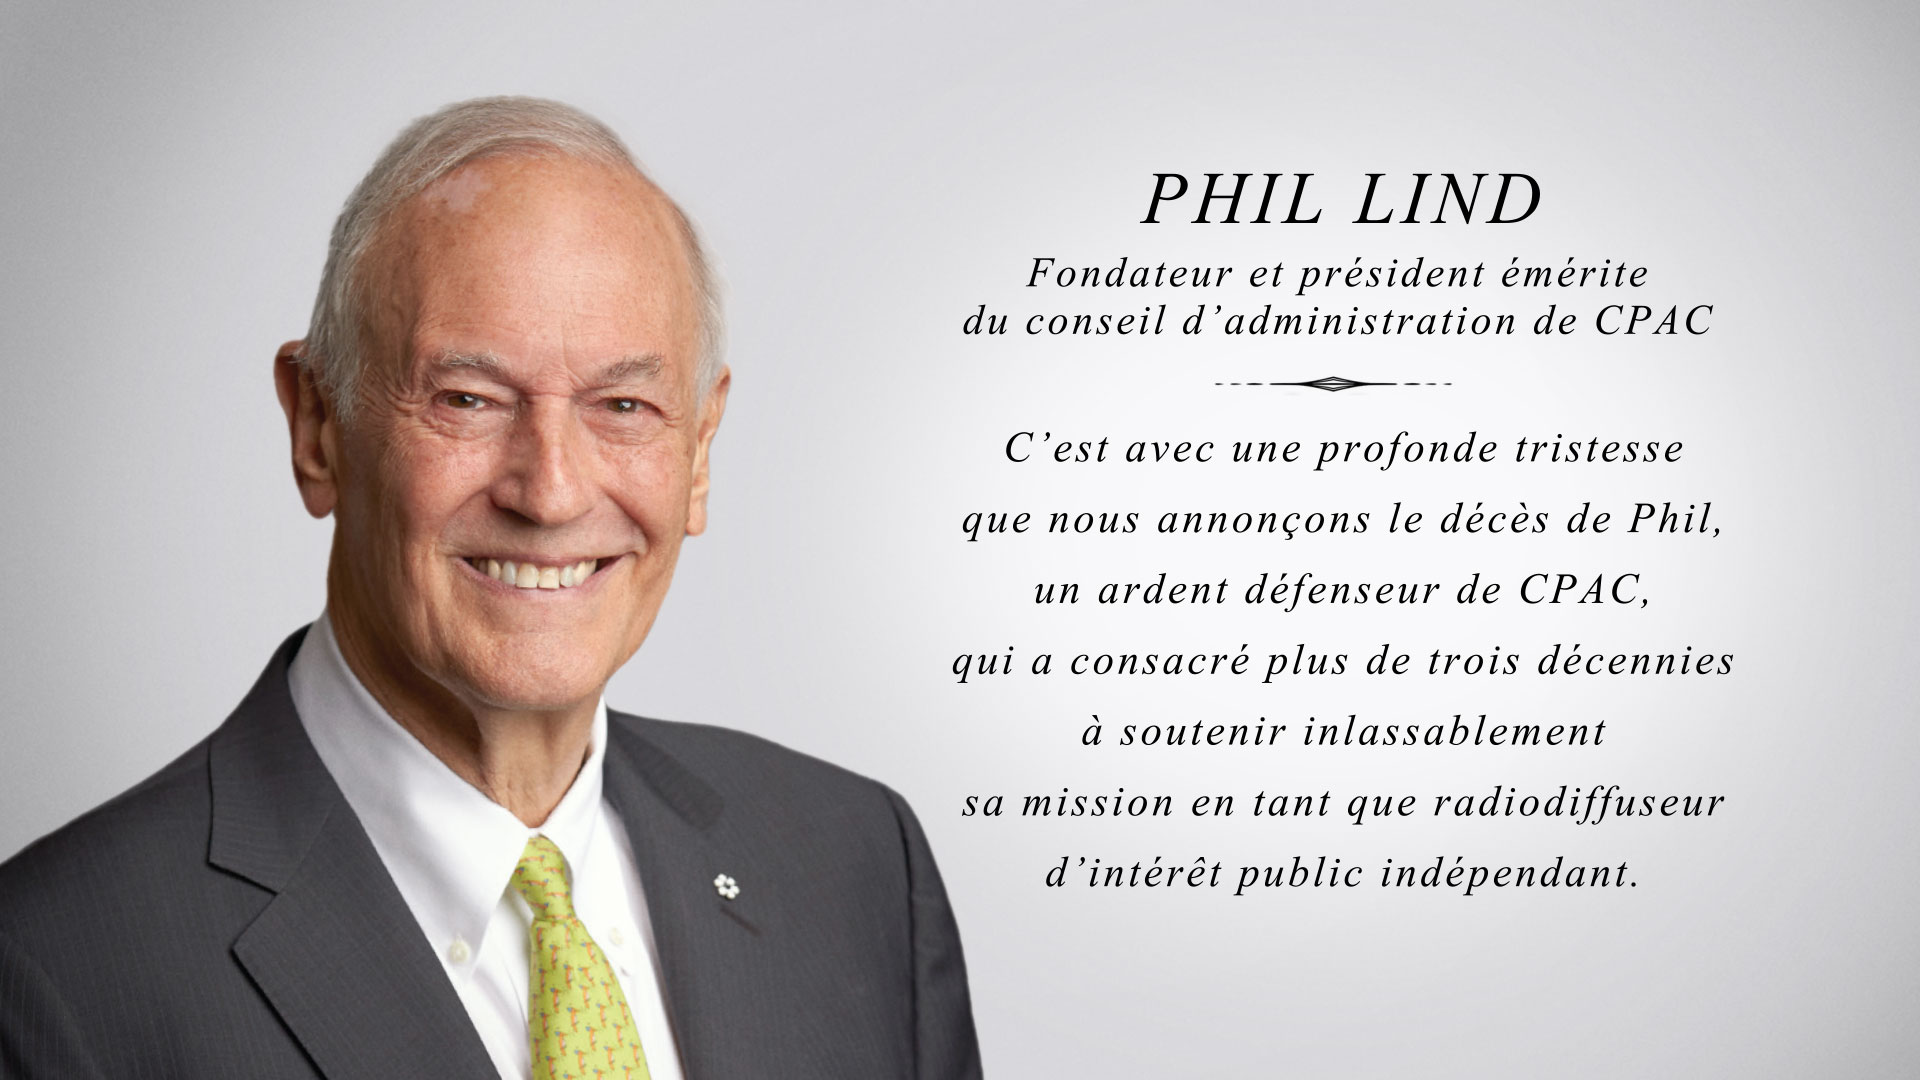 CPAC pleure profondément le décès de son fondateur et président de son conseil d'administration, Phil Lind.